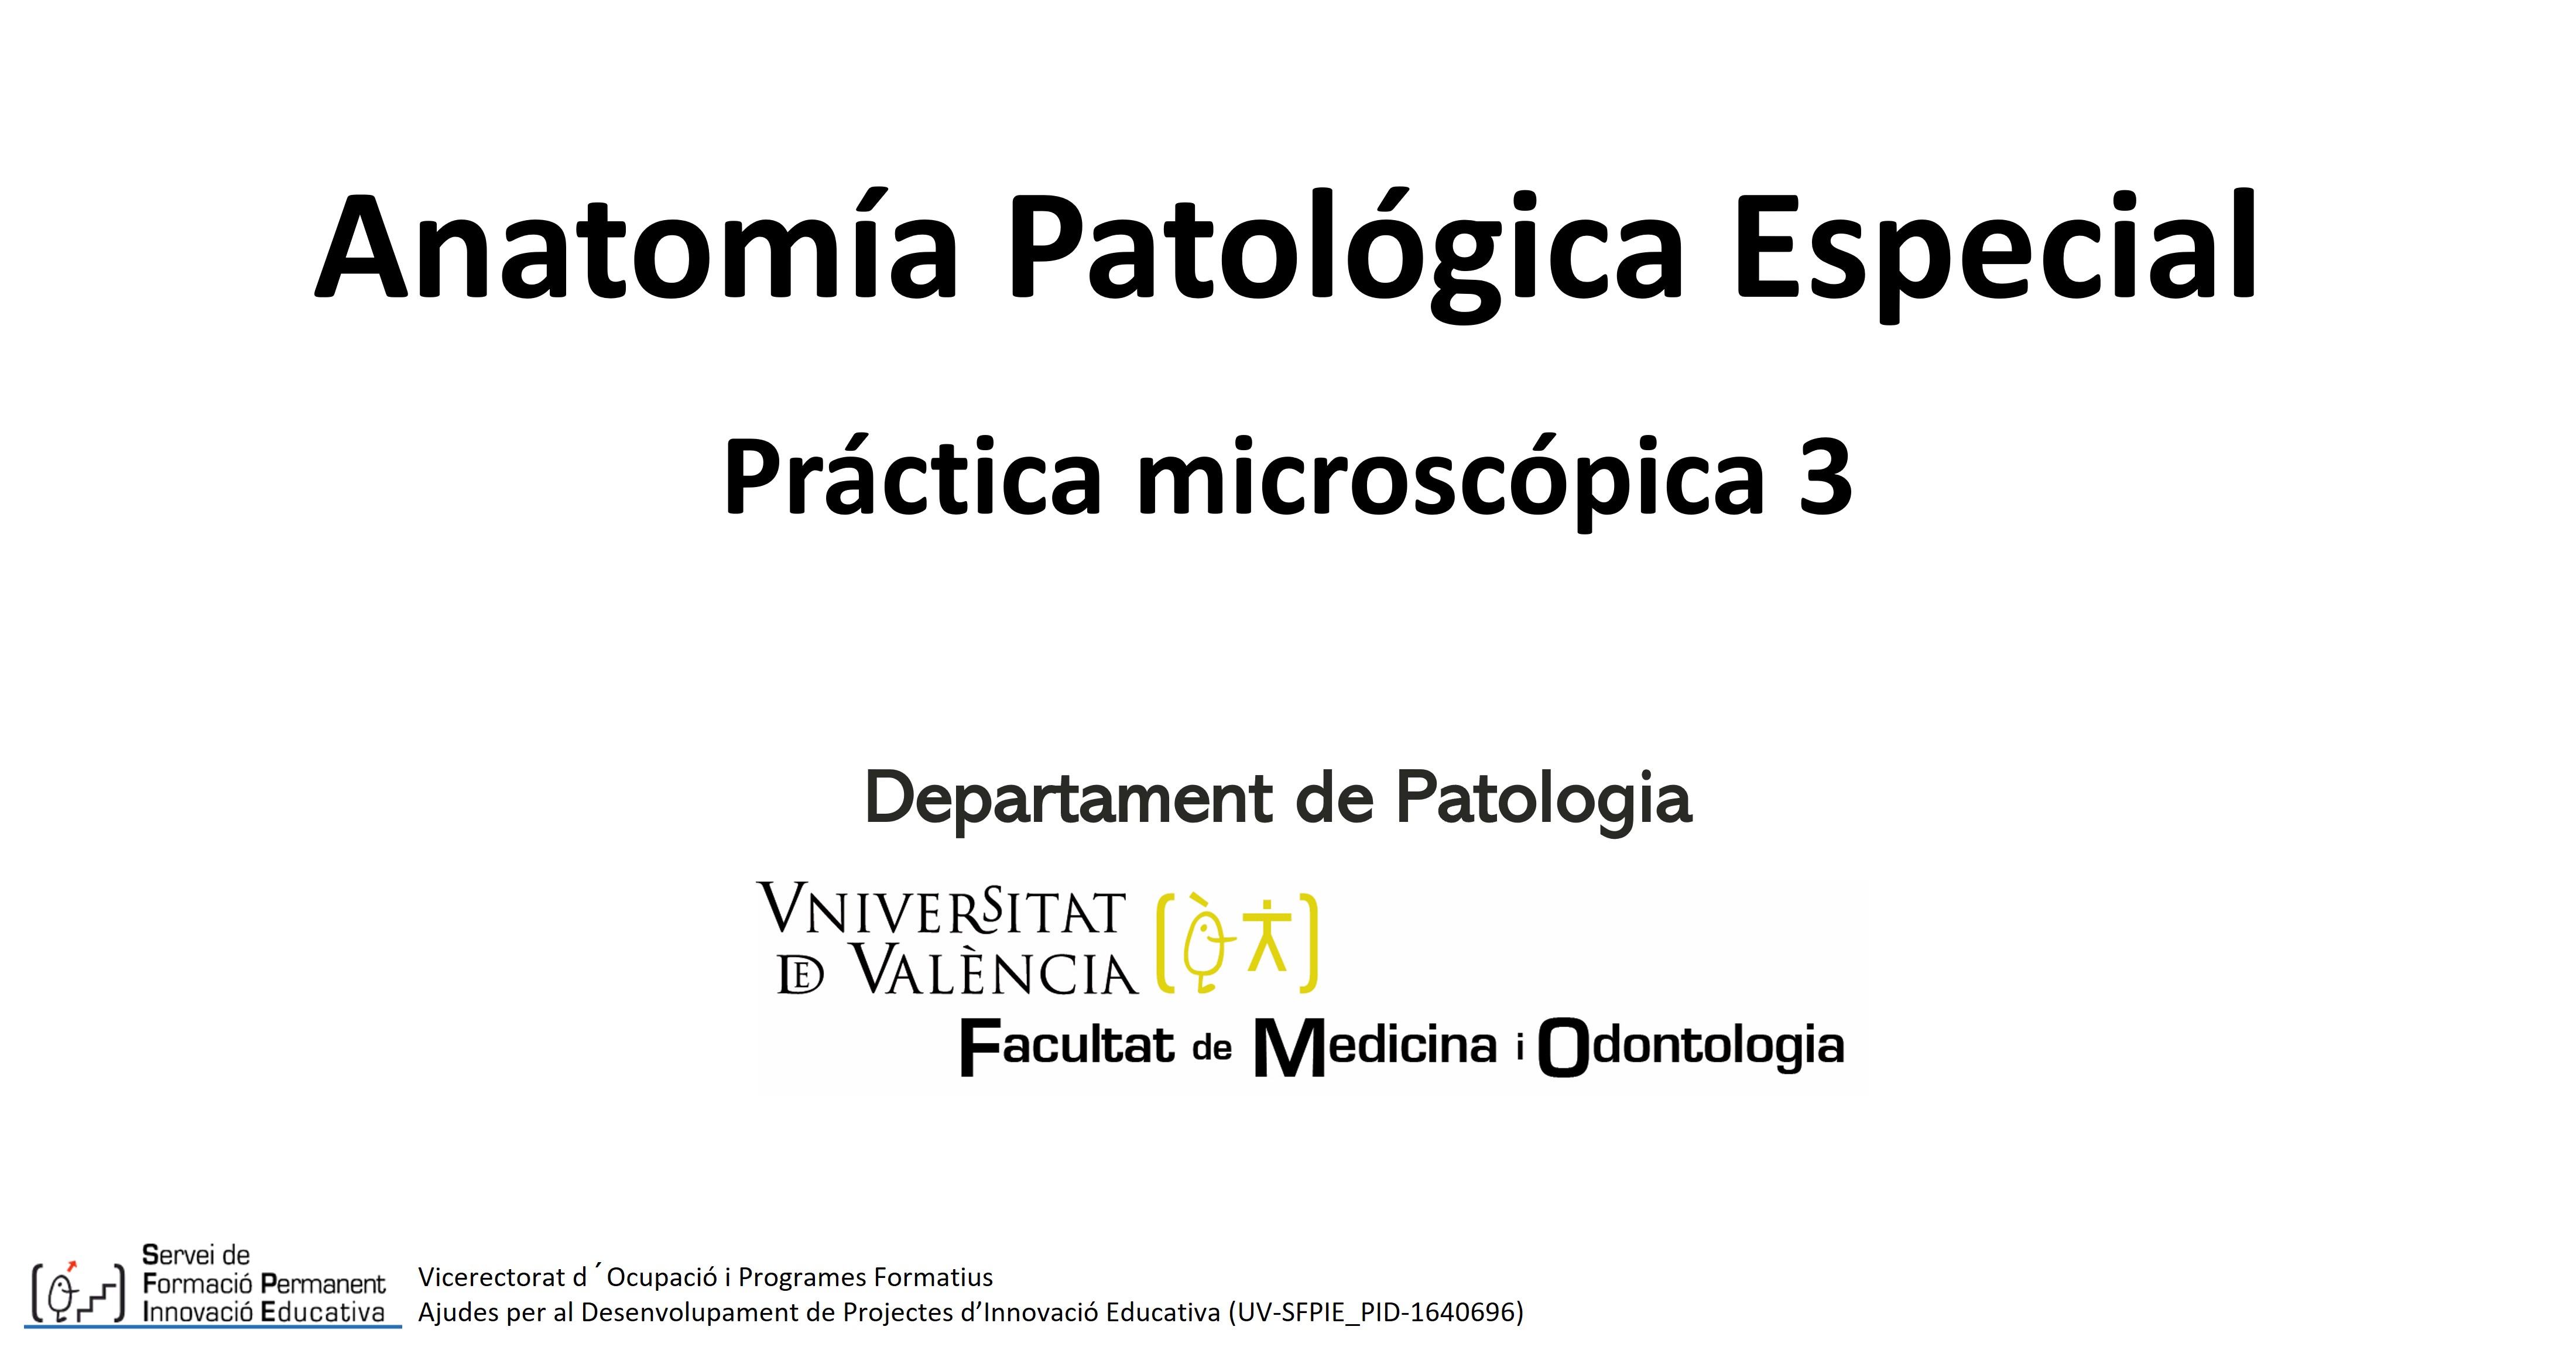 Anatomía Patológica Especial Práctica microscópica 3